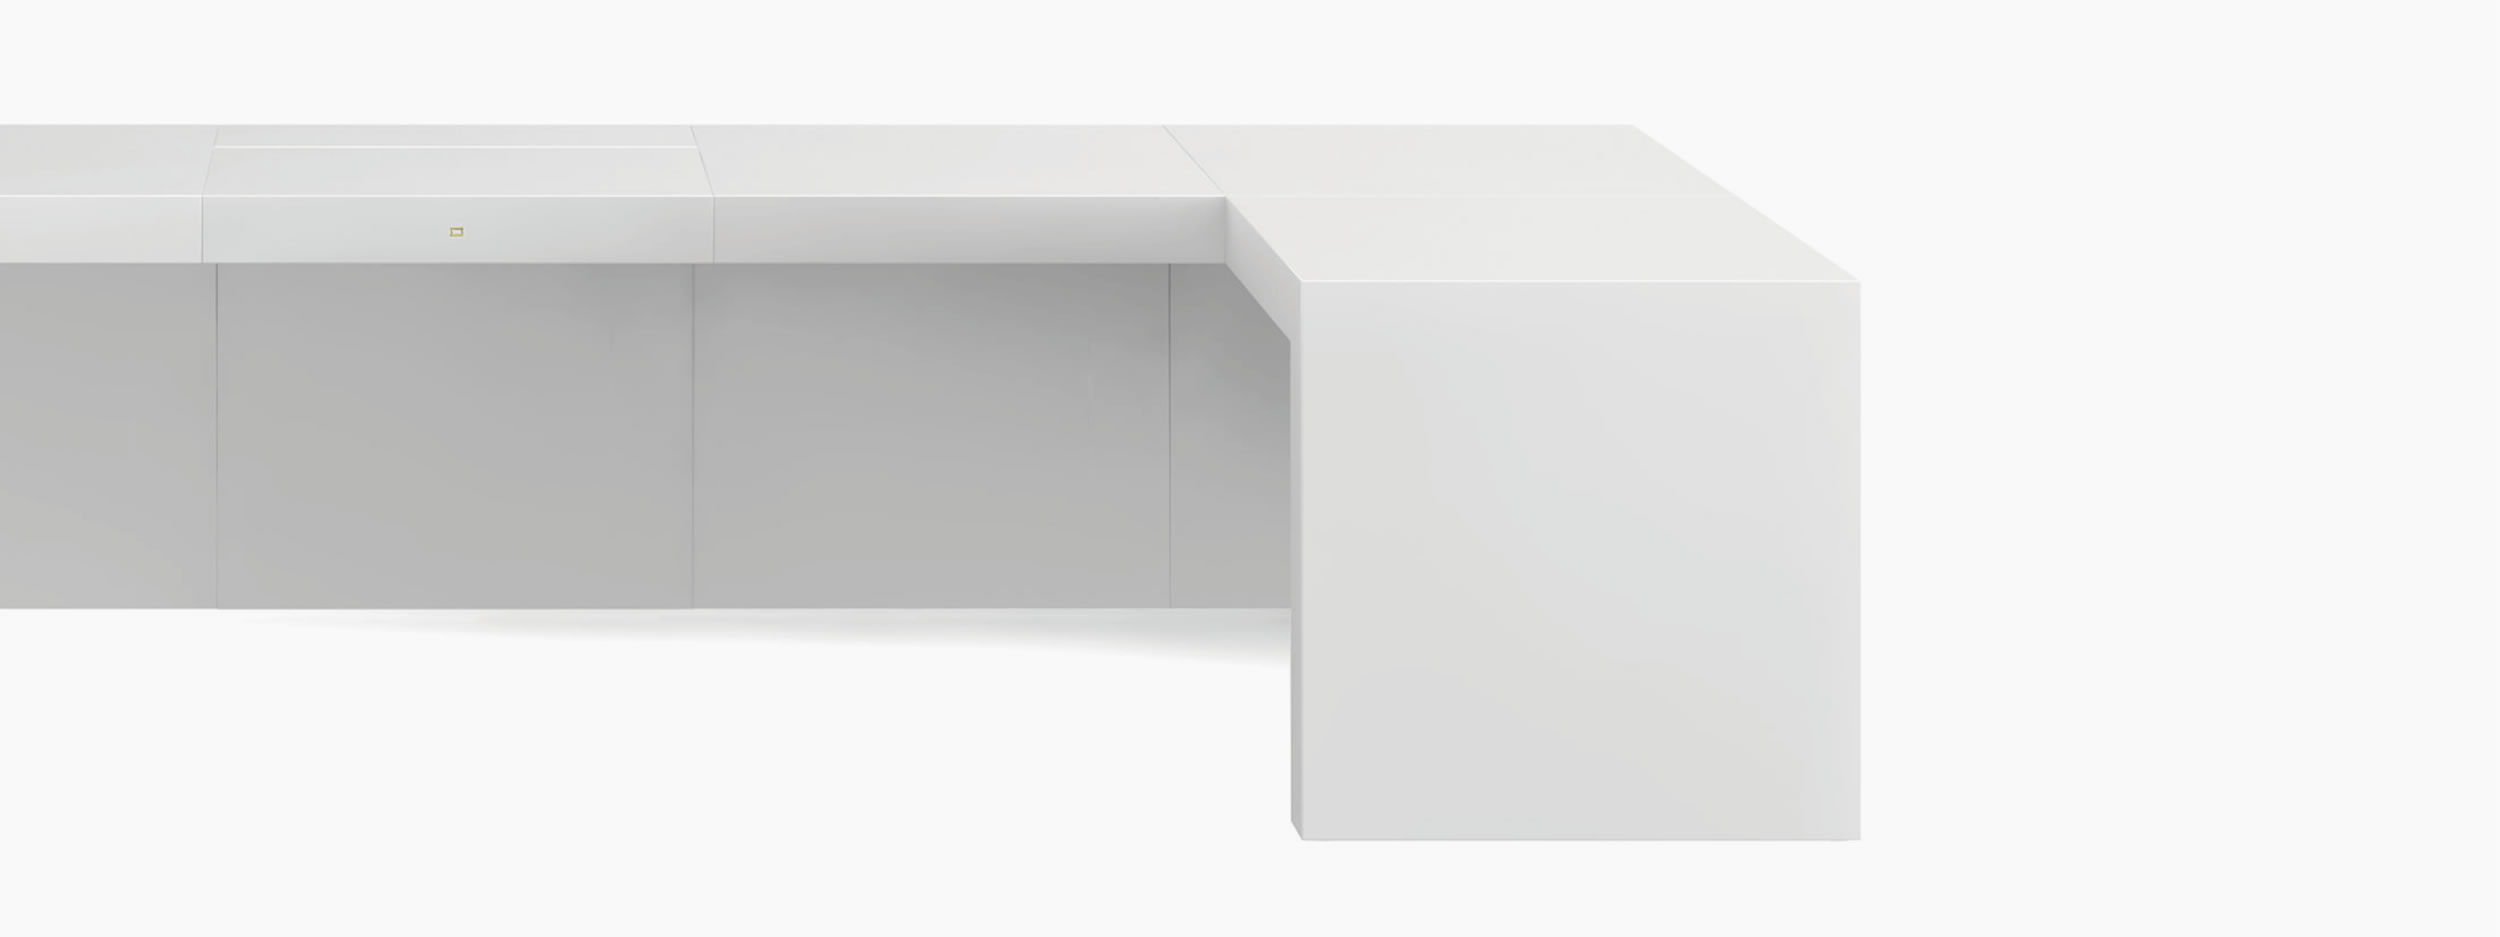 Schreibtisch wuerfel weiss contemporaryart Chefzimmer interior design Schreibtische FS 92 FELIX SCHWAKE RECHTECK